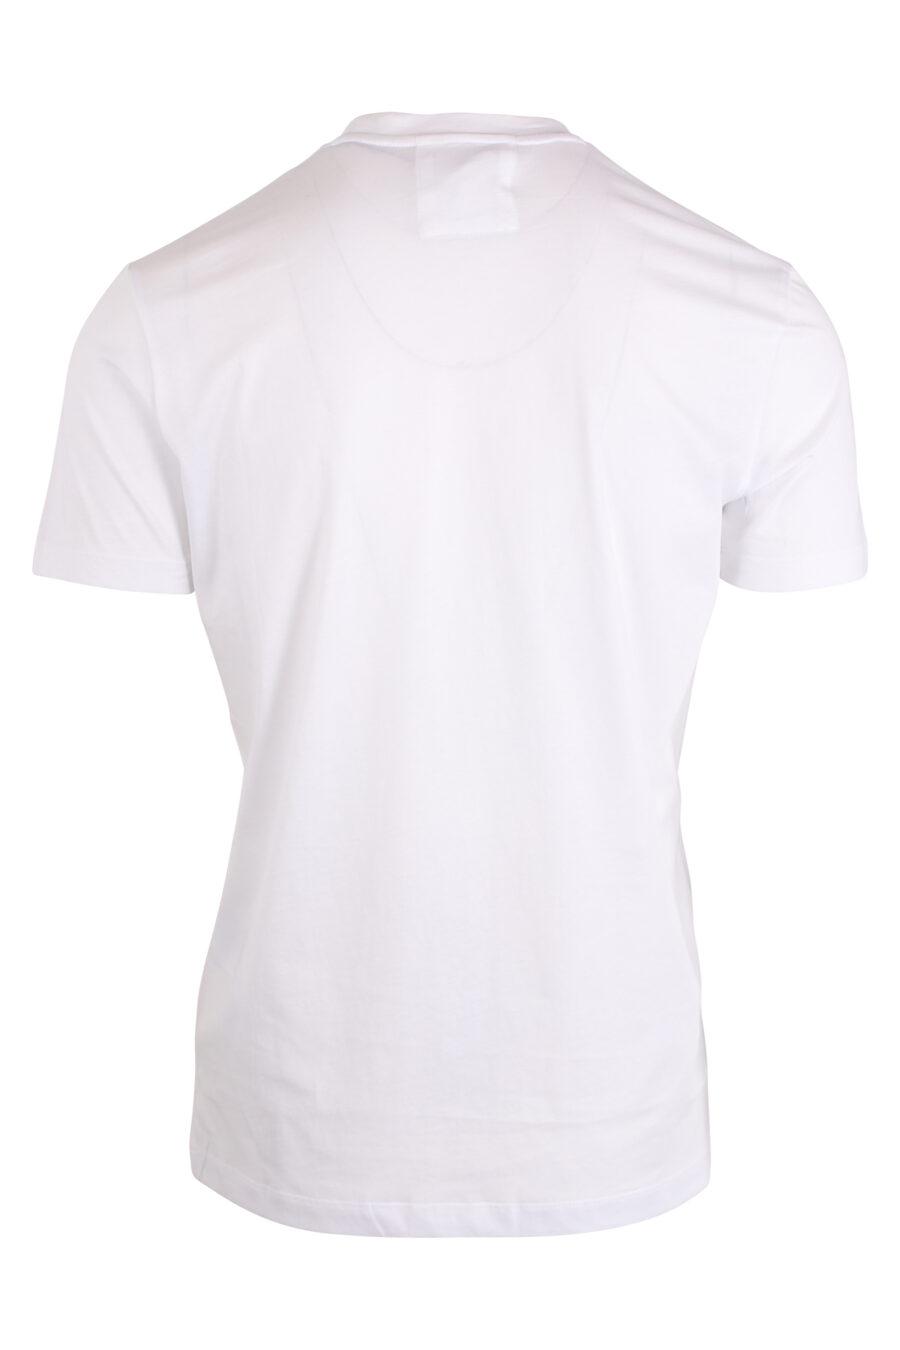 T-shirt branca com letras pretas - IMG 4269